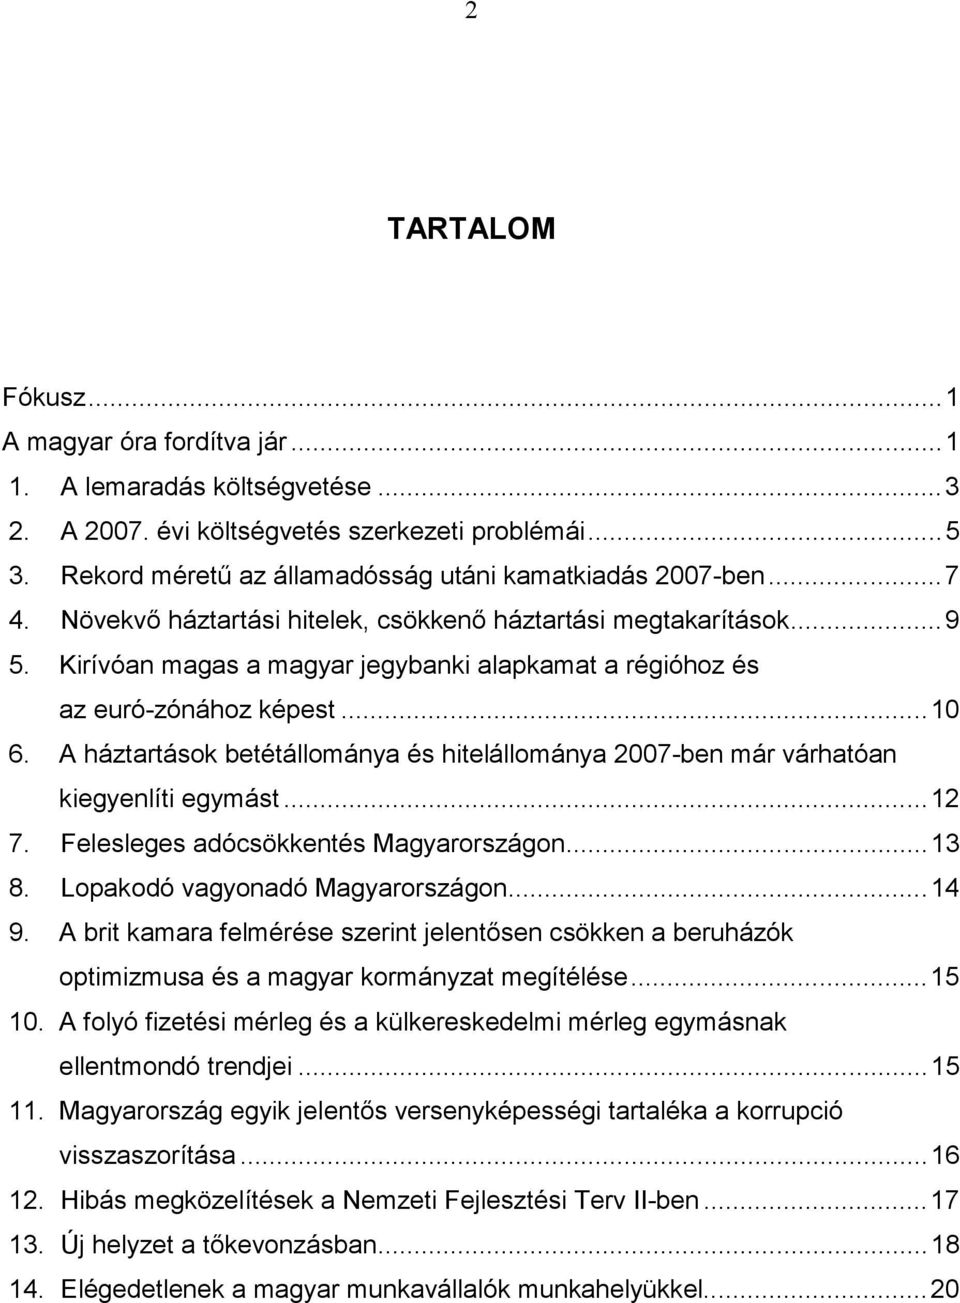 A háztartások betétállománya és hitelállománya 2007-ben már várhatóan kiegyenlíti egymást...12 7. Felesleges adócsökkentés Magyarországon...13 8. Lopakodó vagyonadó Magyarországon...14 9.